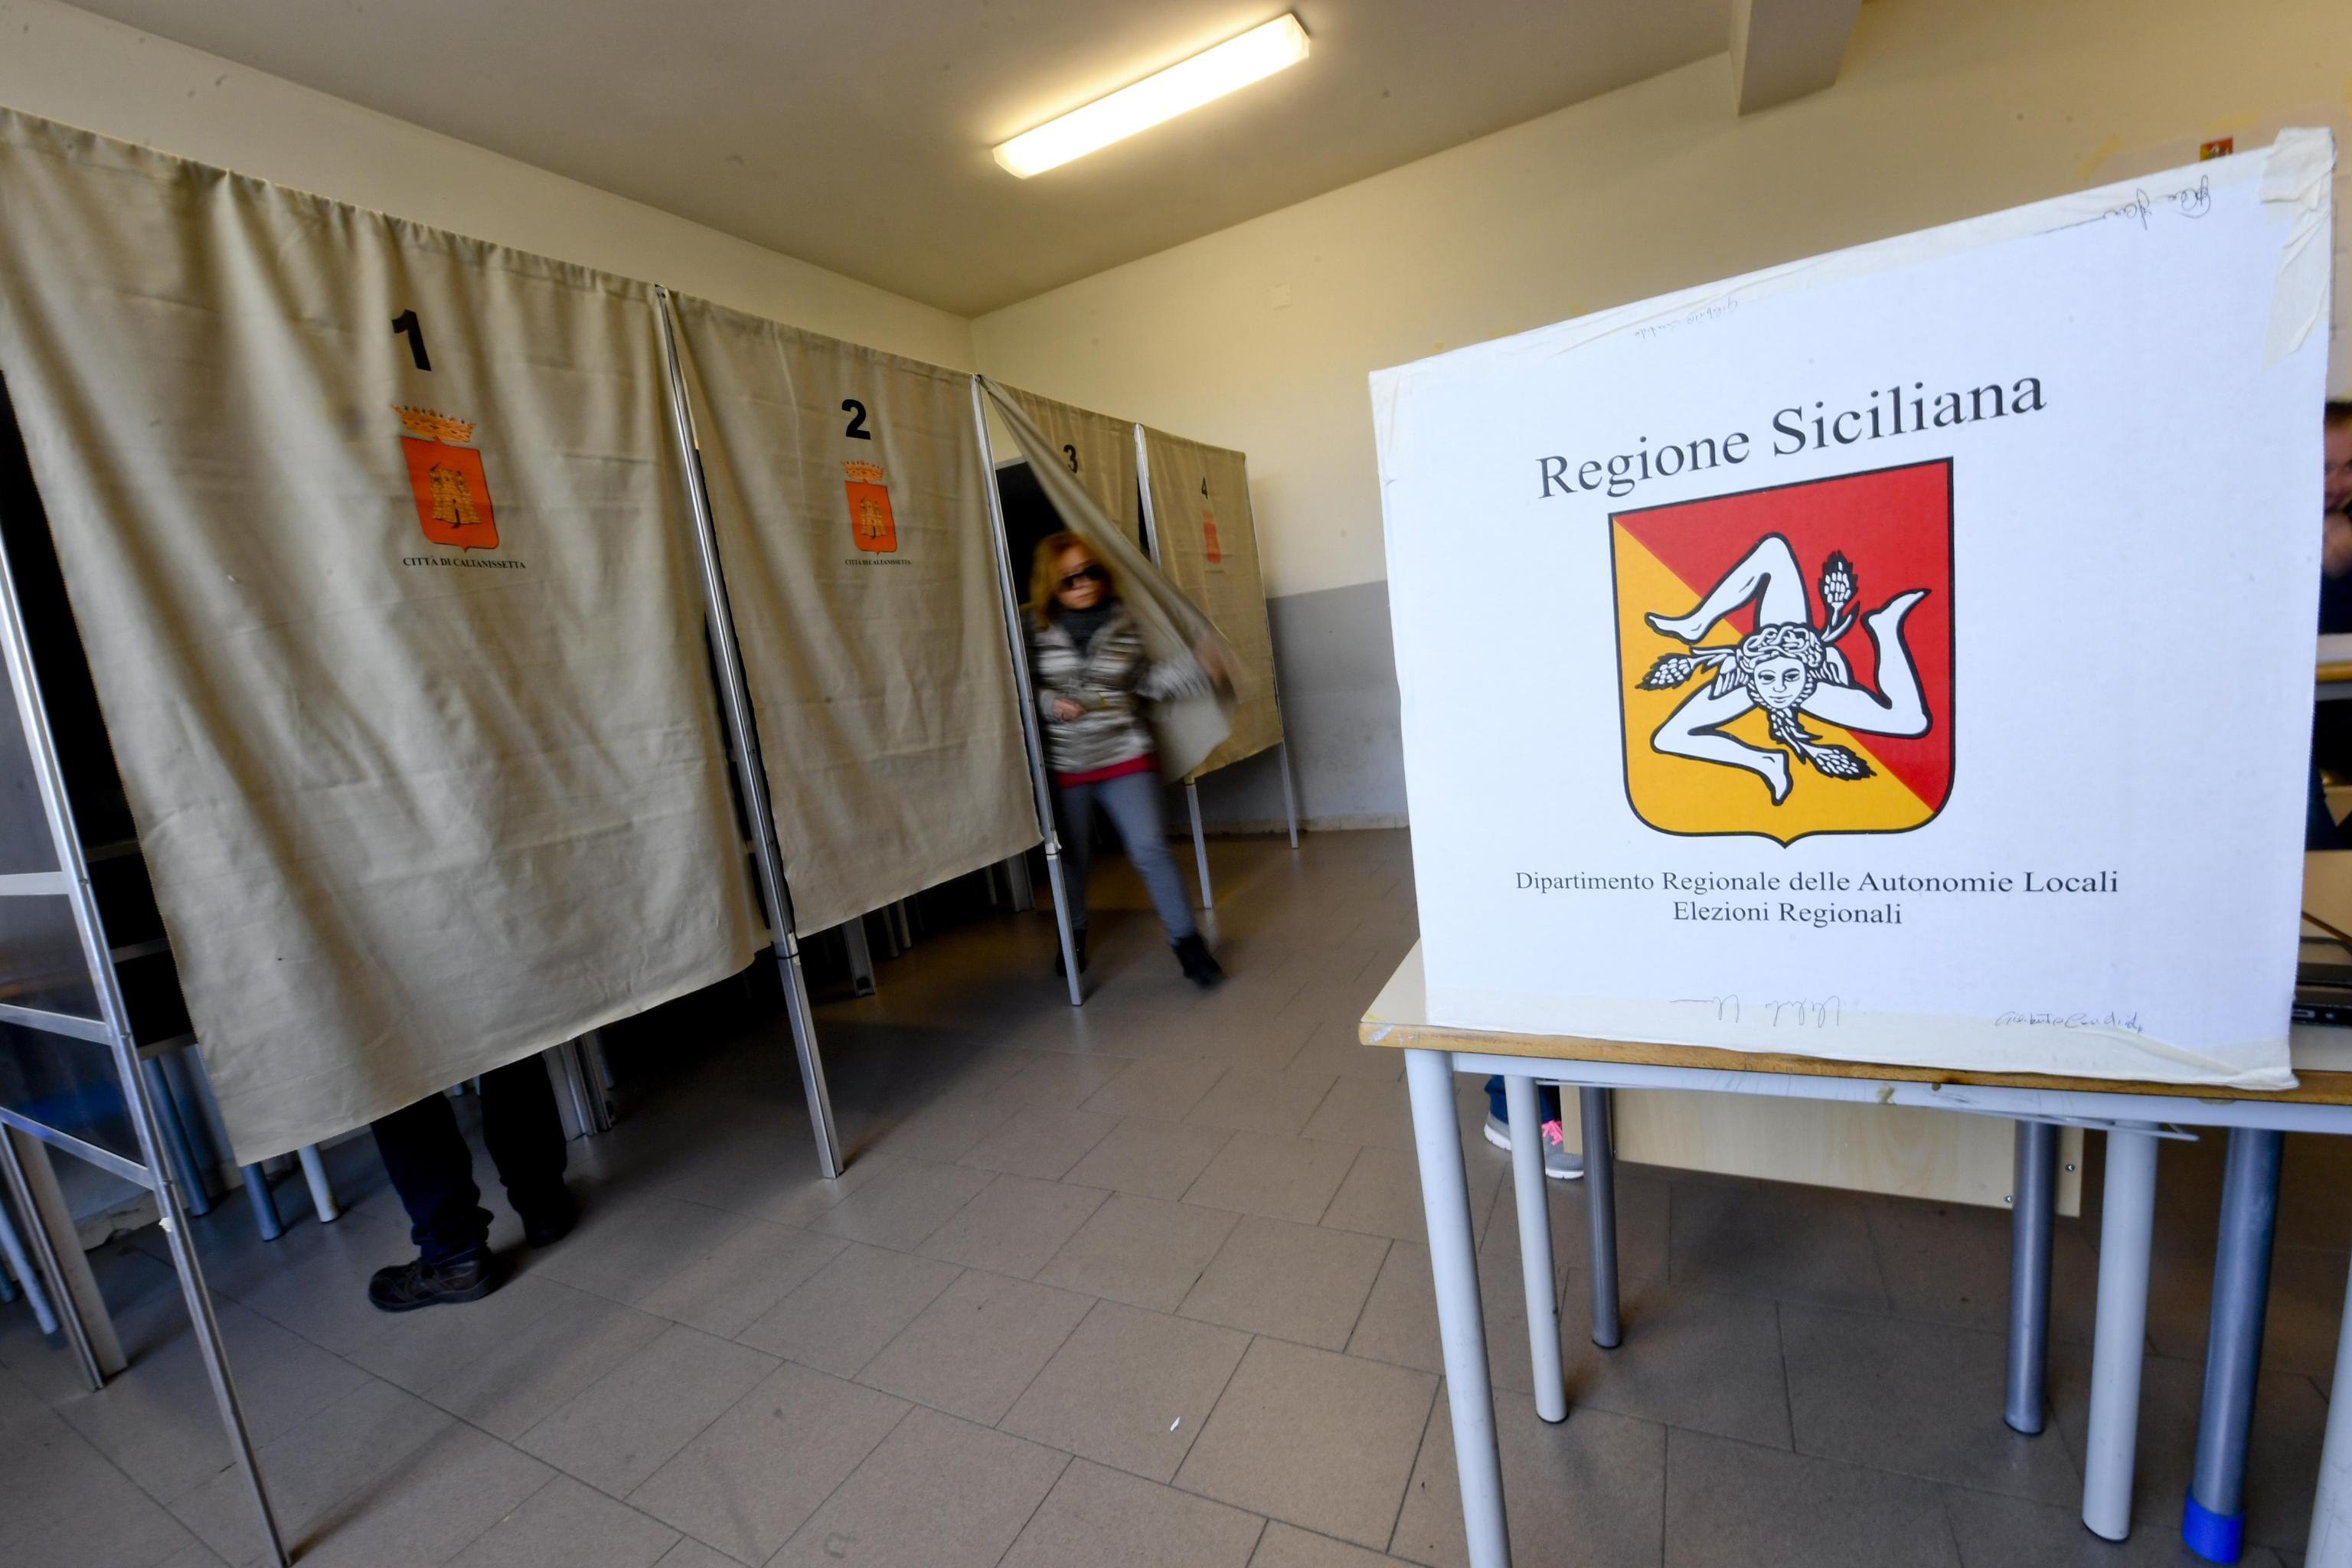 Σικελία: Προηγείται η Κεντροδεξιά στις περιφερειακές εκλογές